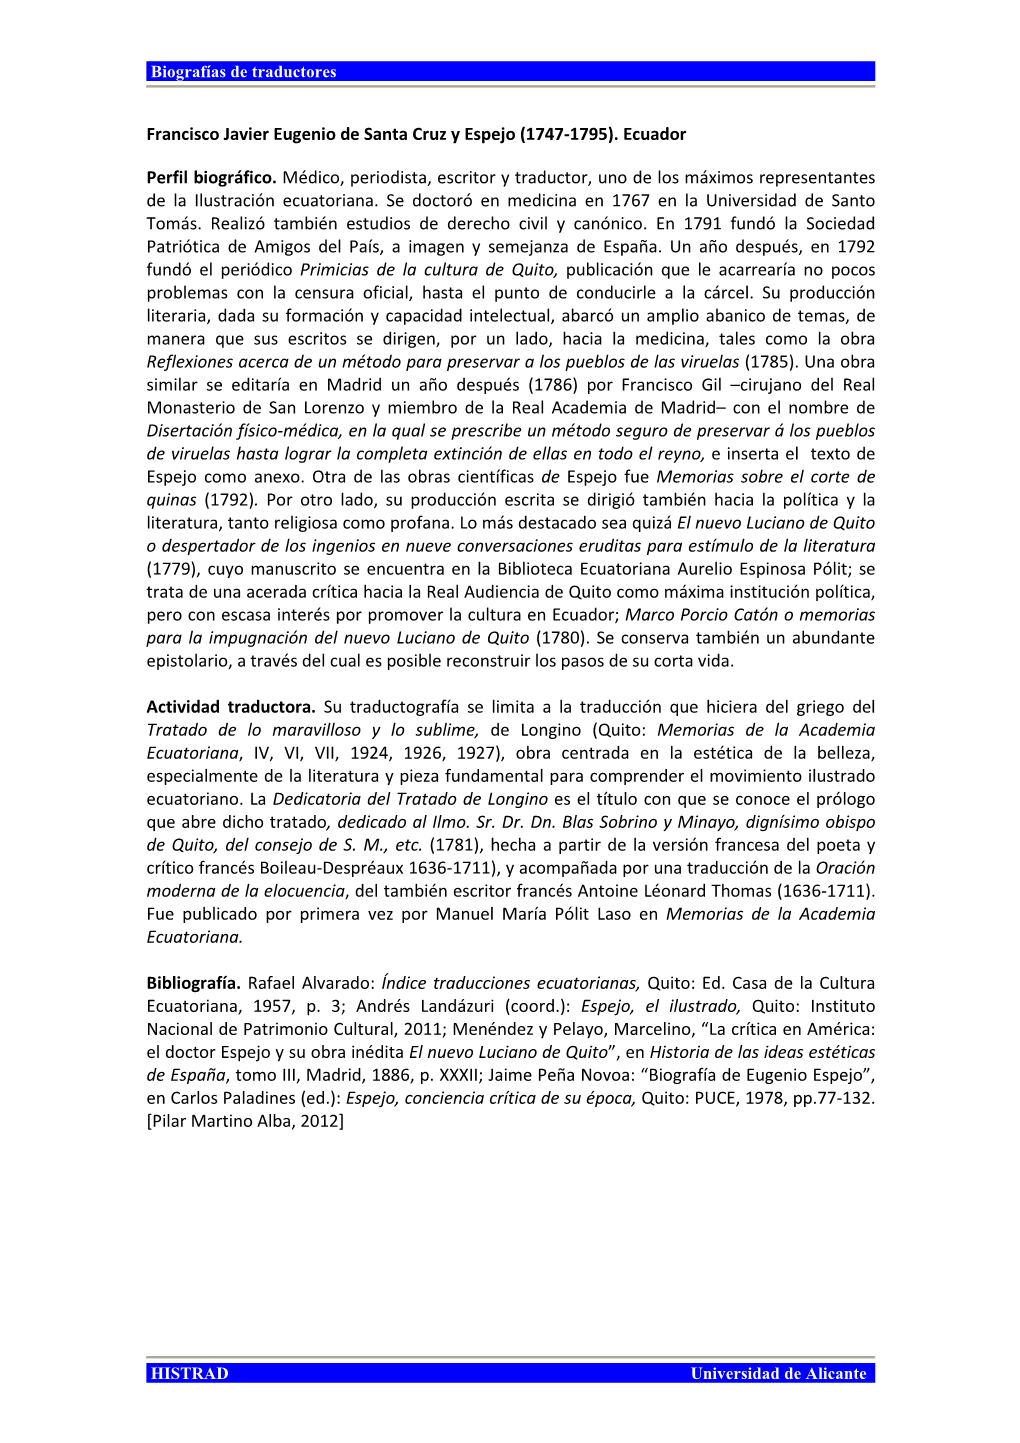 Eugenio Espejo”, En Carlos Paladines (Ed.): Espejo, Conciencia Crítica De Su Época, Quito: PUCE, 1978, Pp.77-132